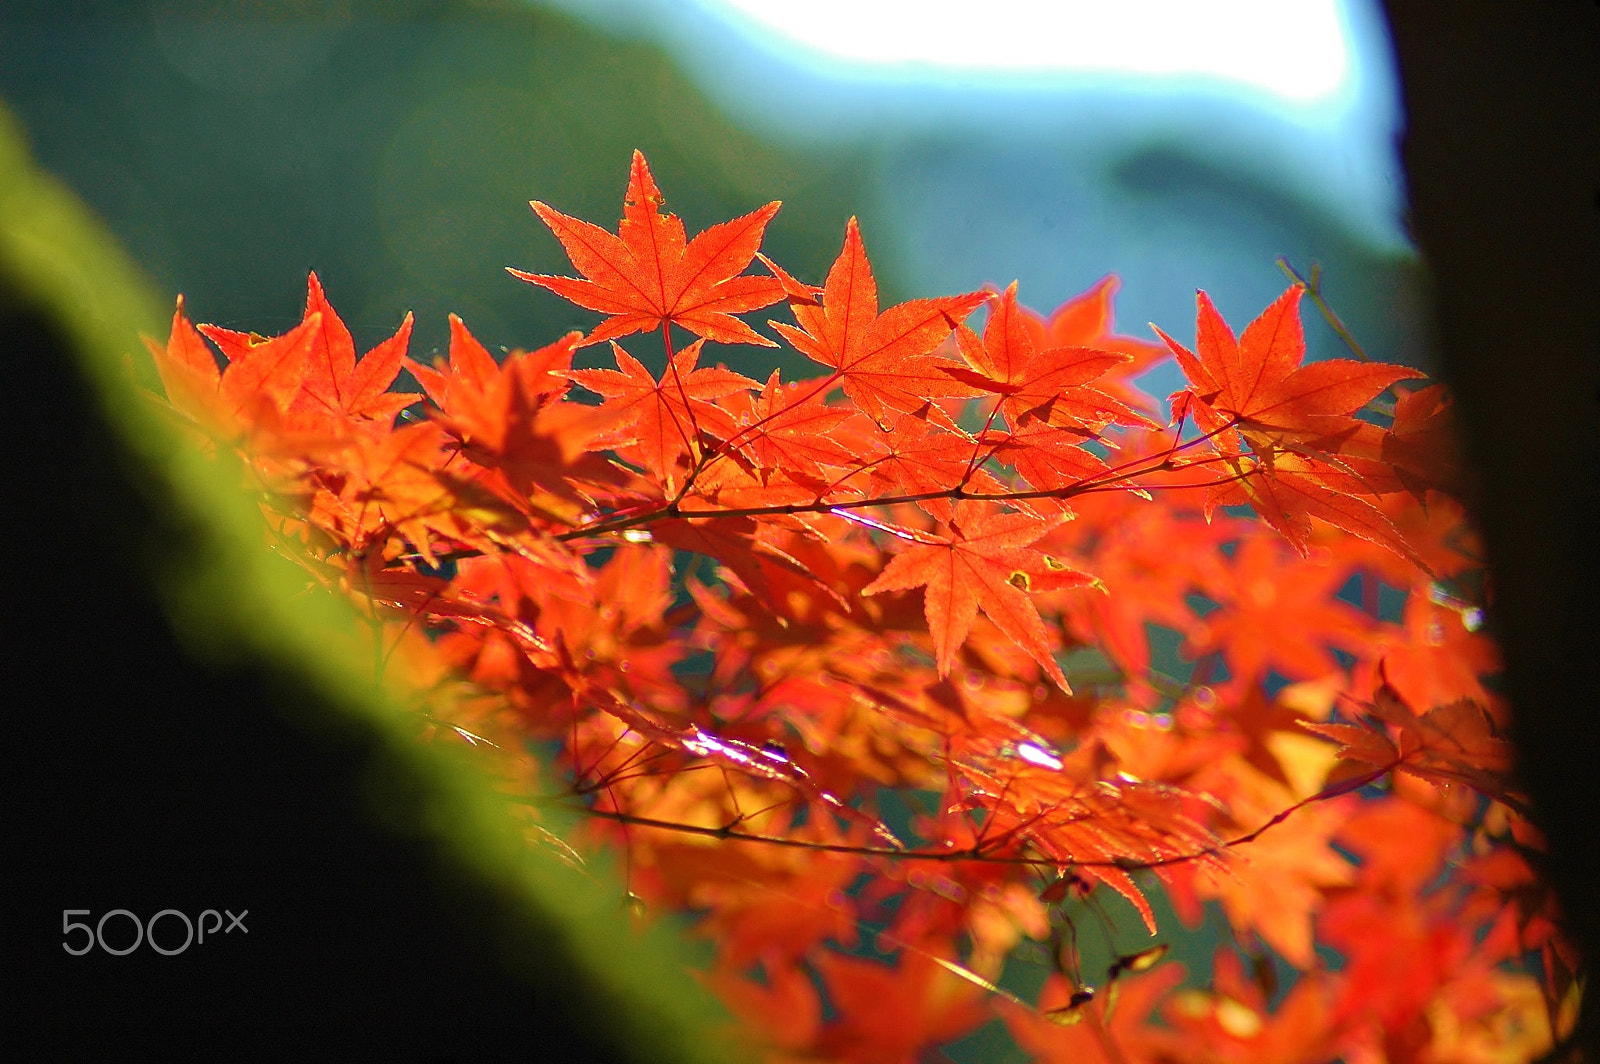 Nikon D70 + AF Zoom-Nikkor 70-300mm f/4-5.6D ED sample photo. Autumn nature......leaves photography